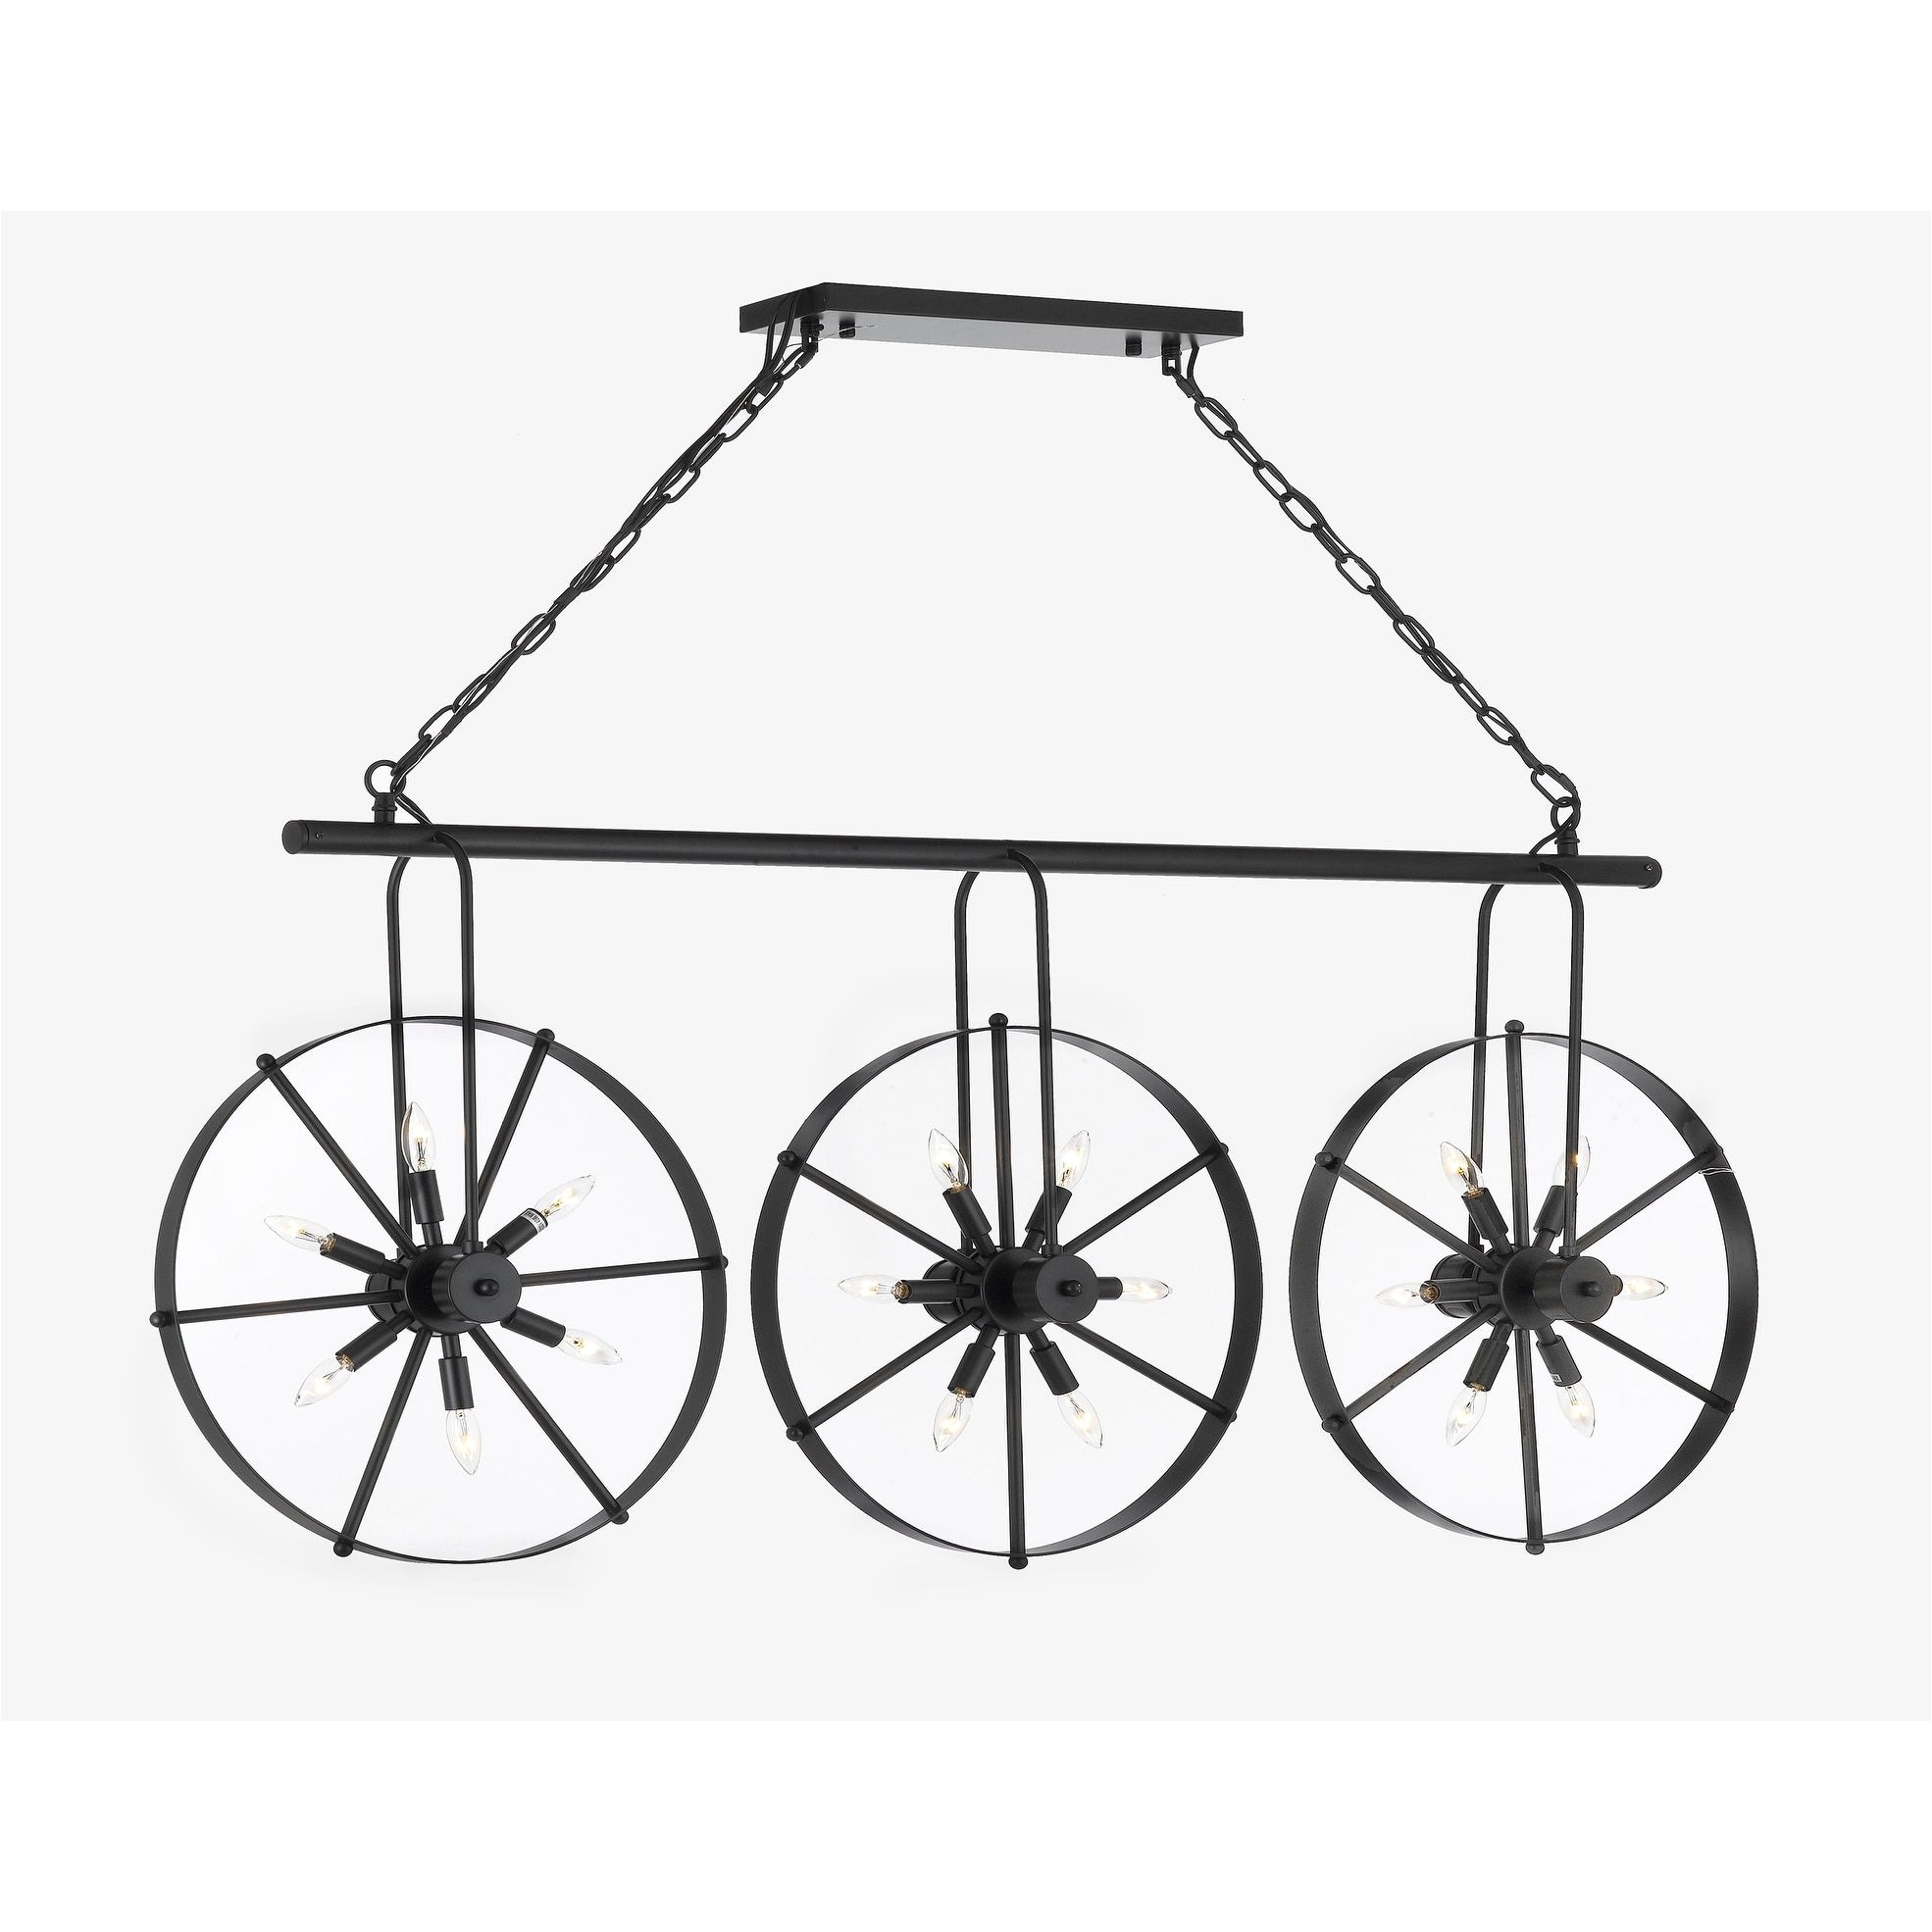 gallery wrought iron vintage industrial style spoke wheel linear chandelier billiard pool blue table